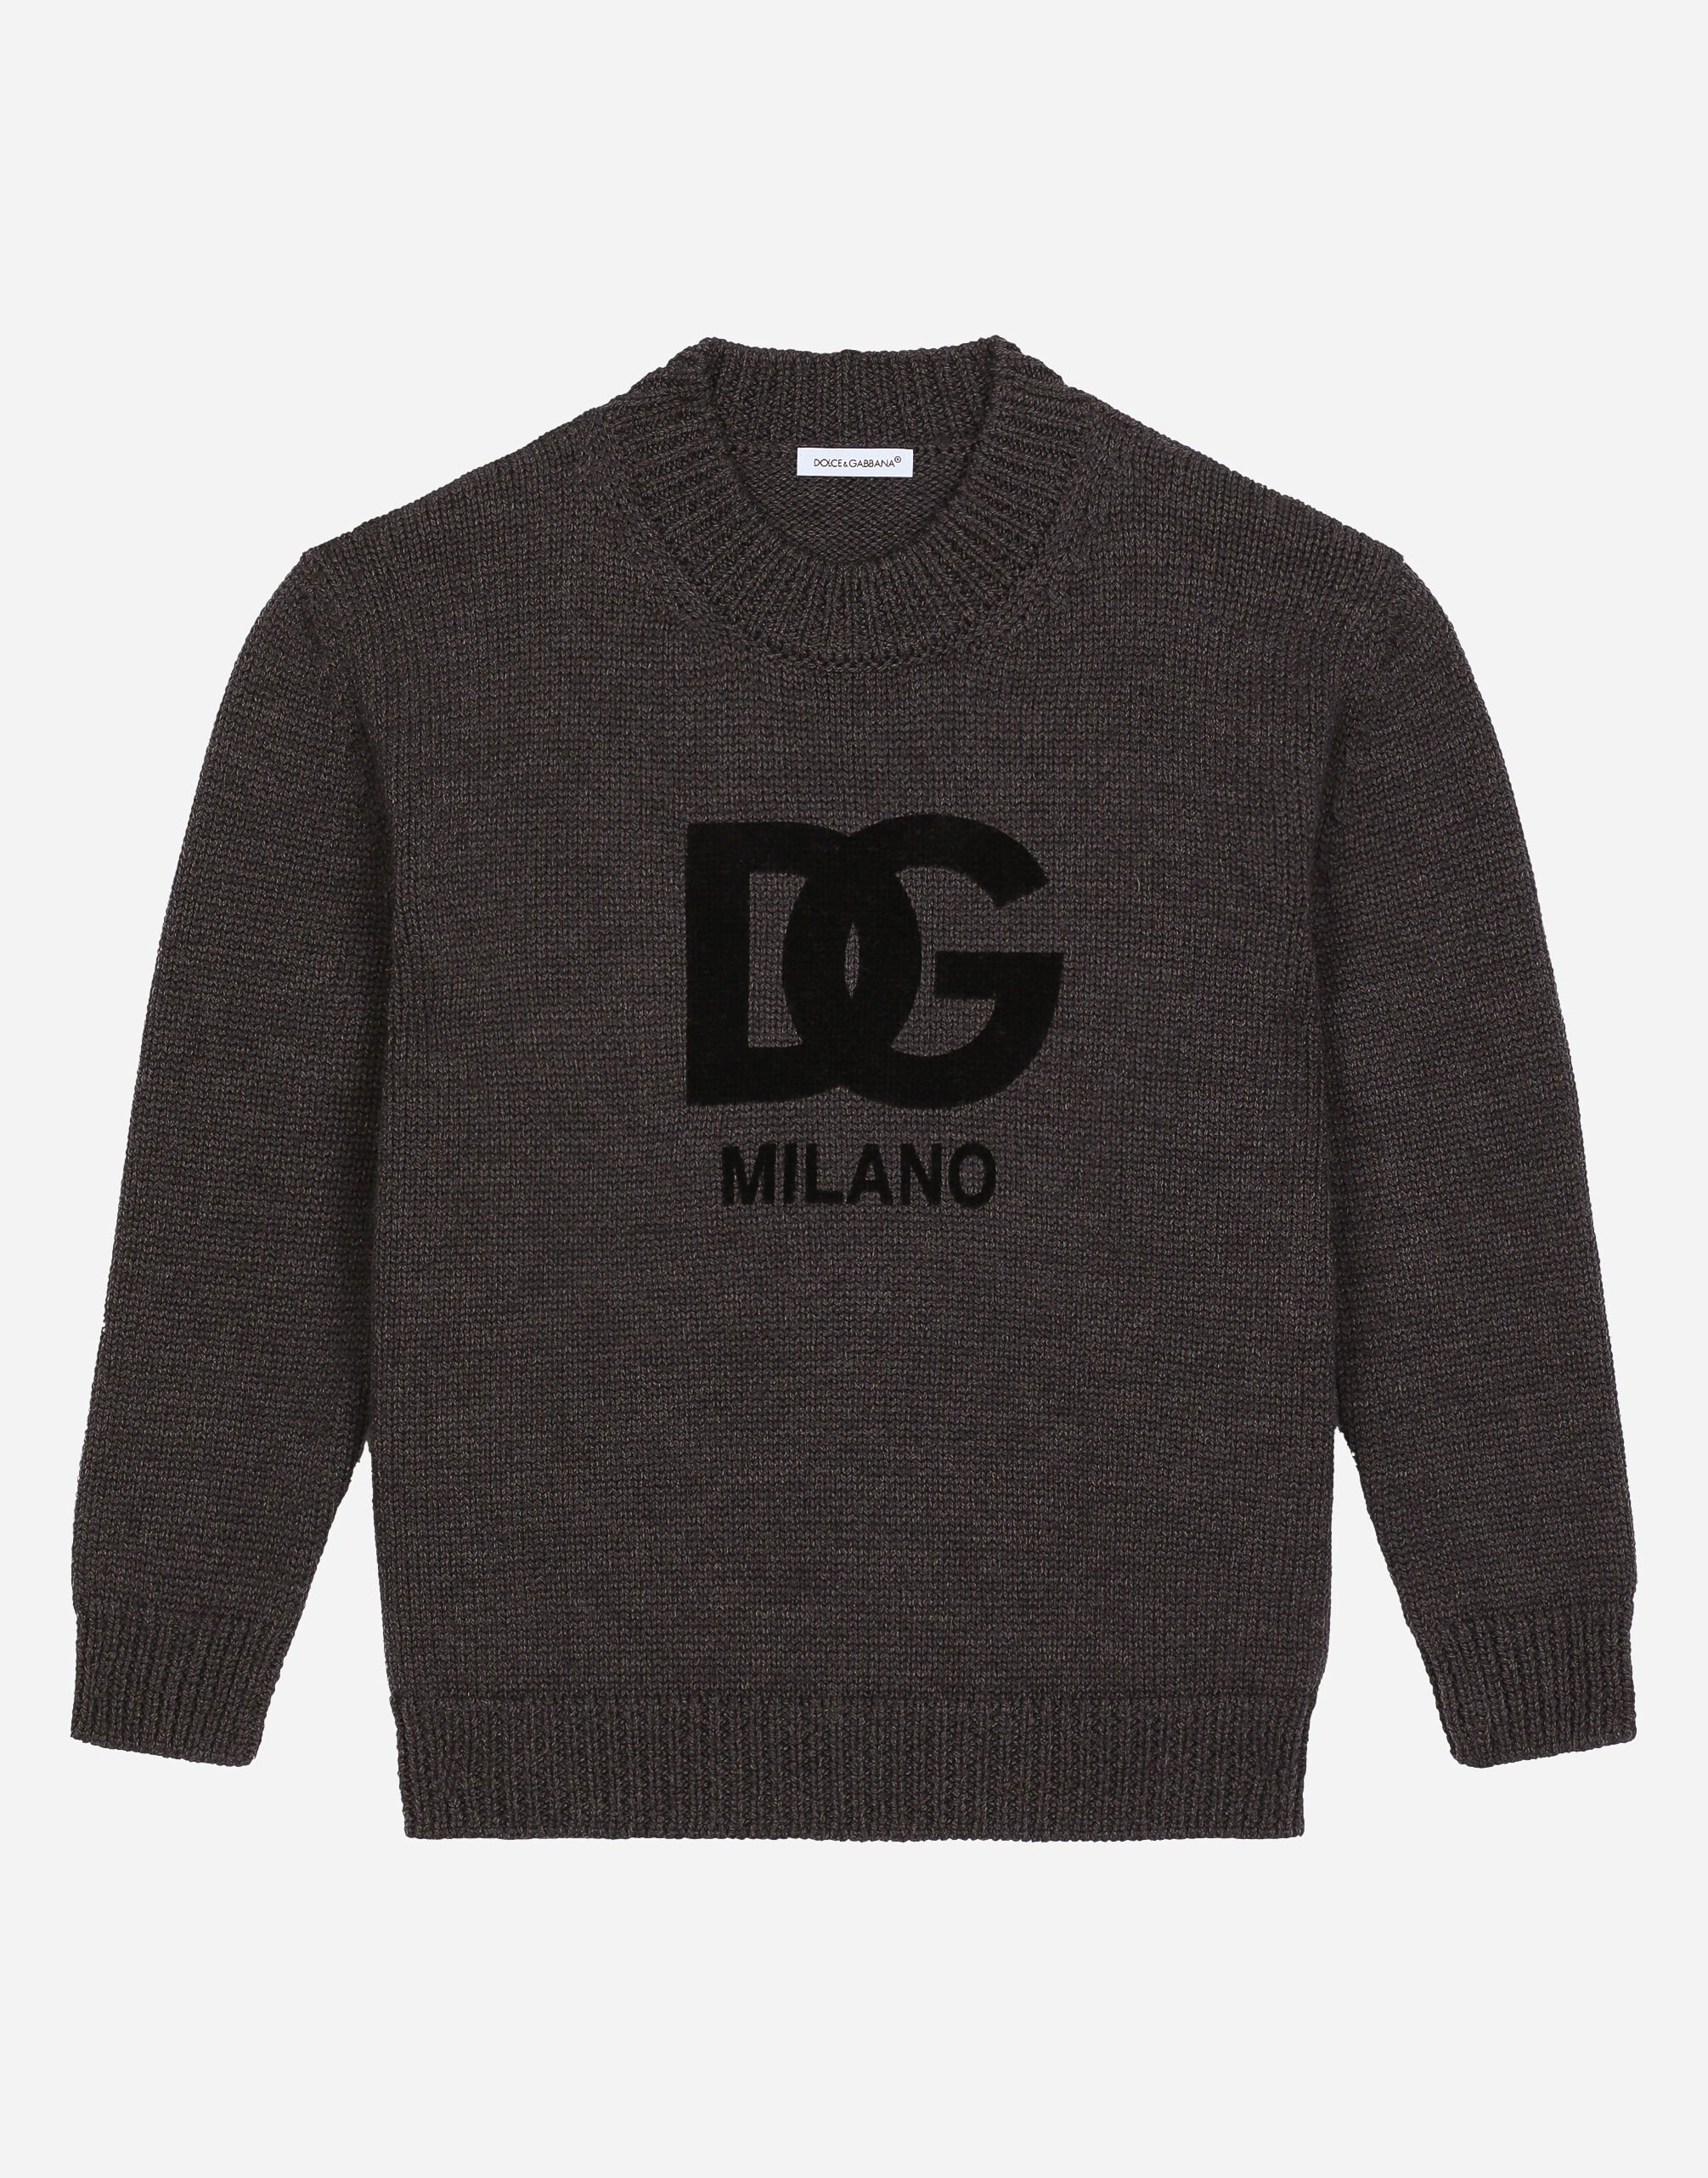 Dolce & Gabbana 植绒 DG 徽标羊毛圆领毛衣 黑 L4KWE1JCVR9